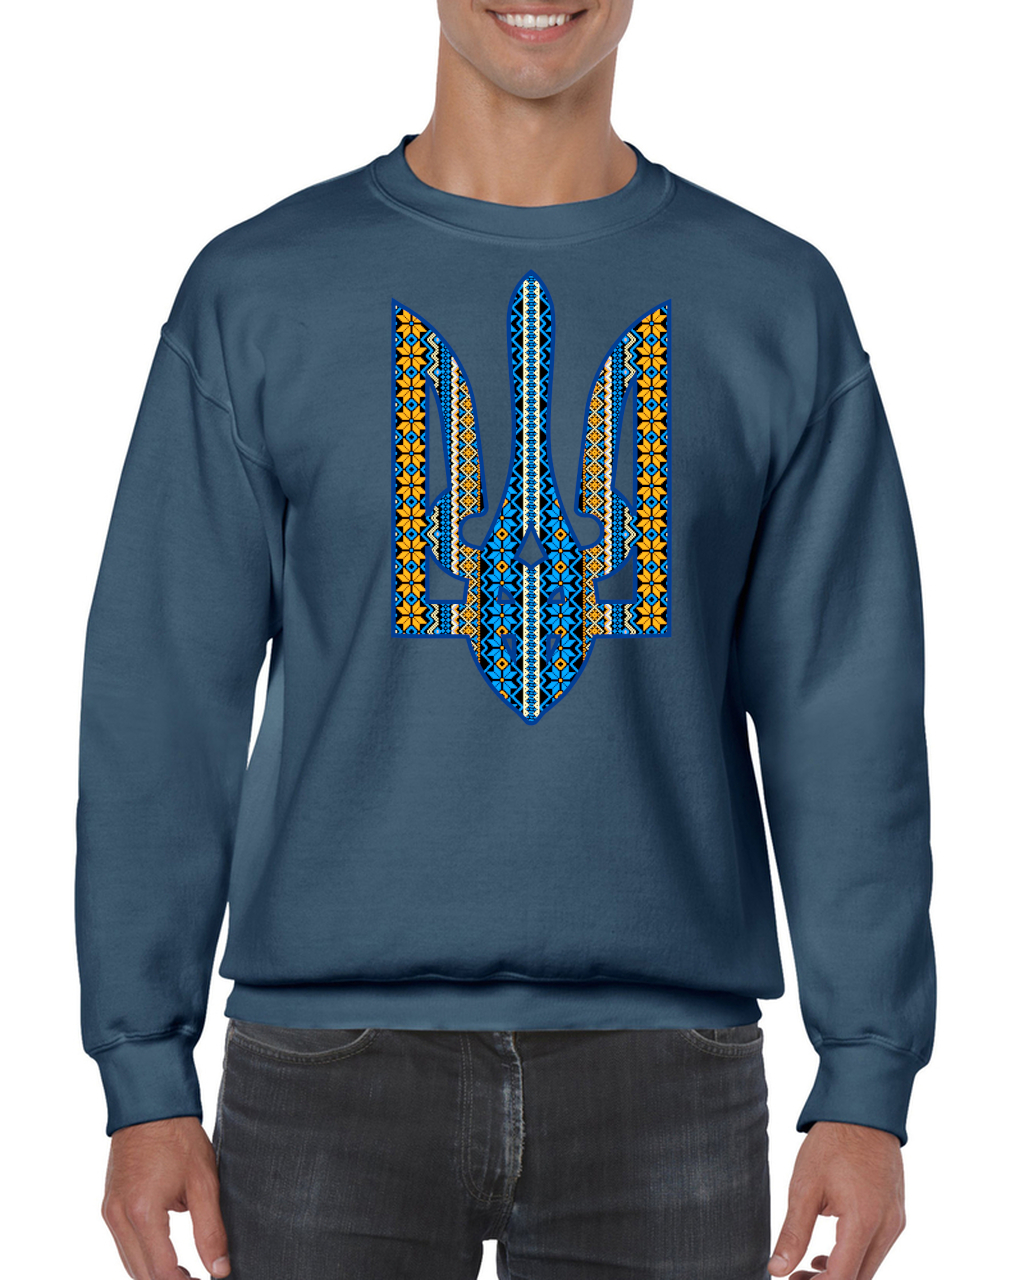 Adult unisex sweatshirt "Ornate Tryzub"